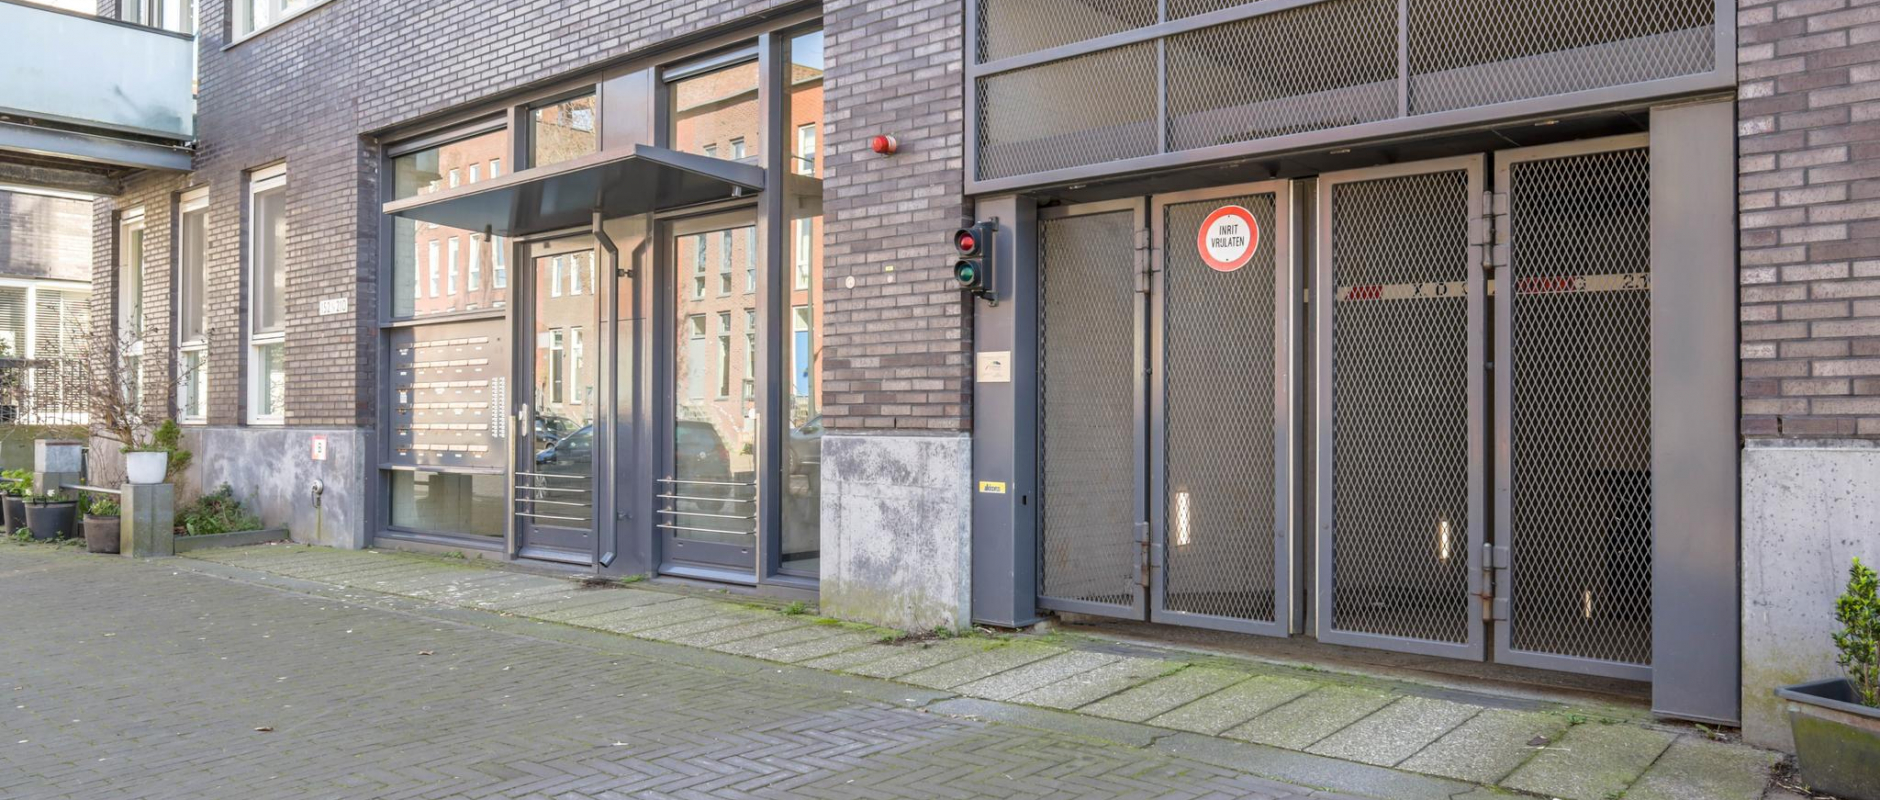 Woning te koop aan de Johan van der Keukenstraat 104PP B6 te Amsterdam